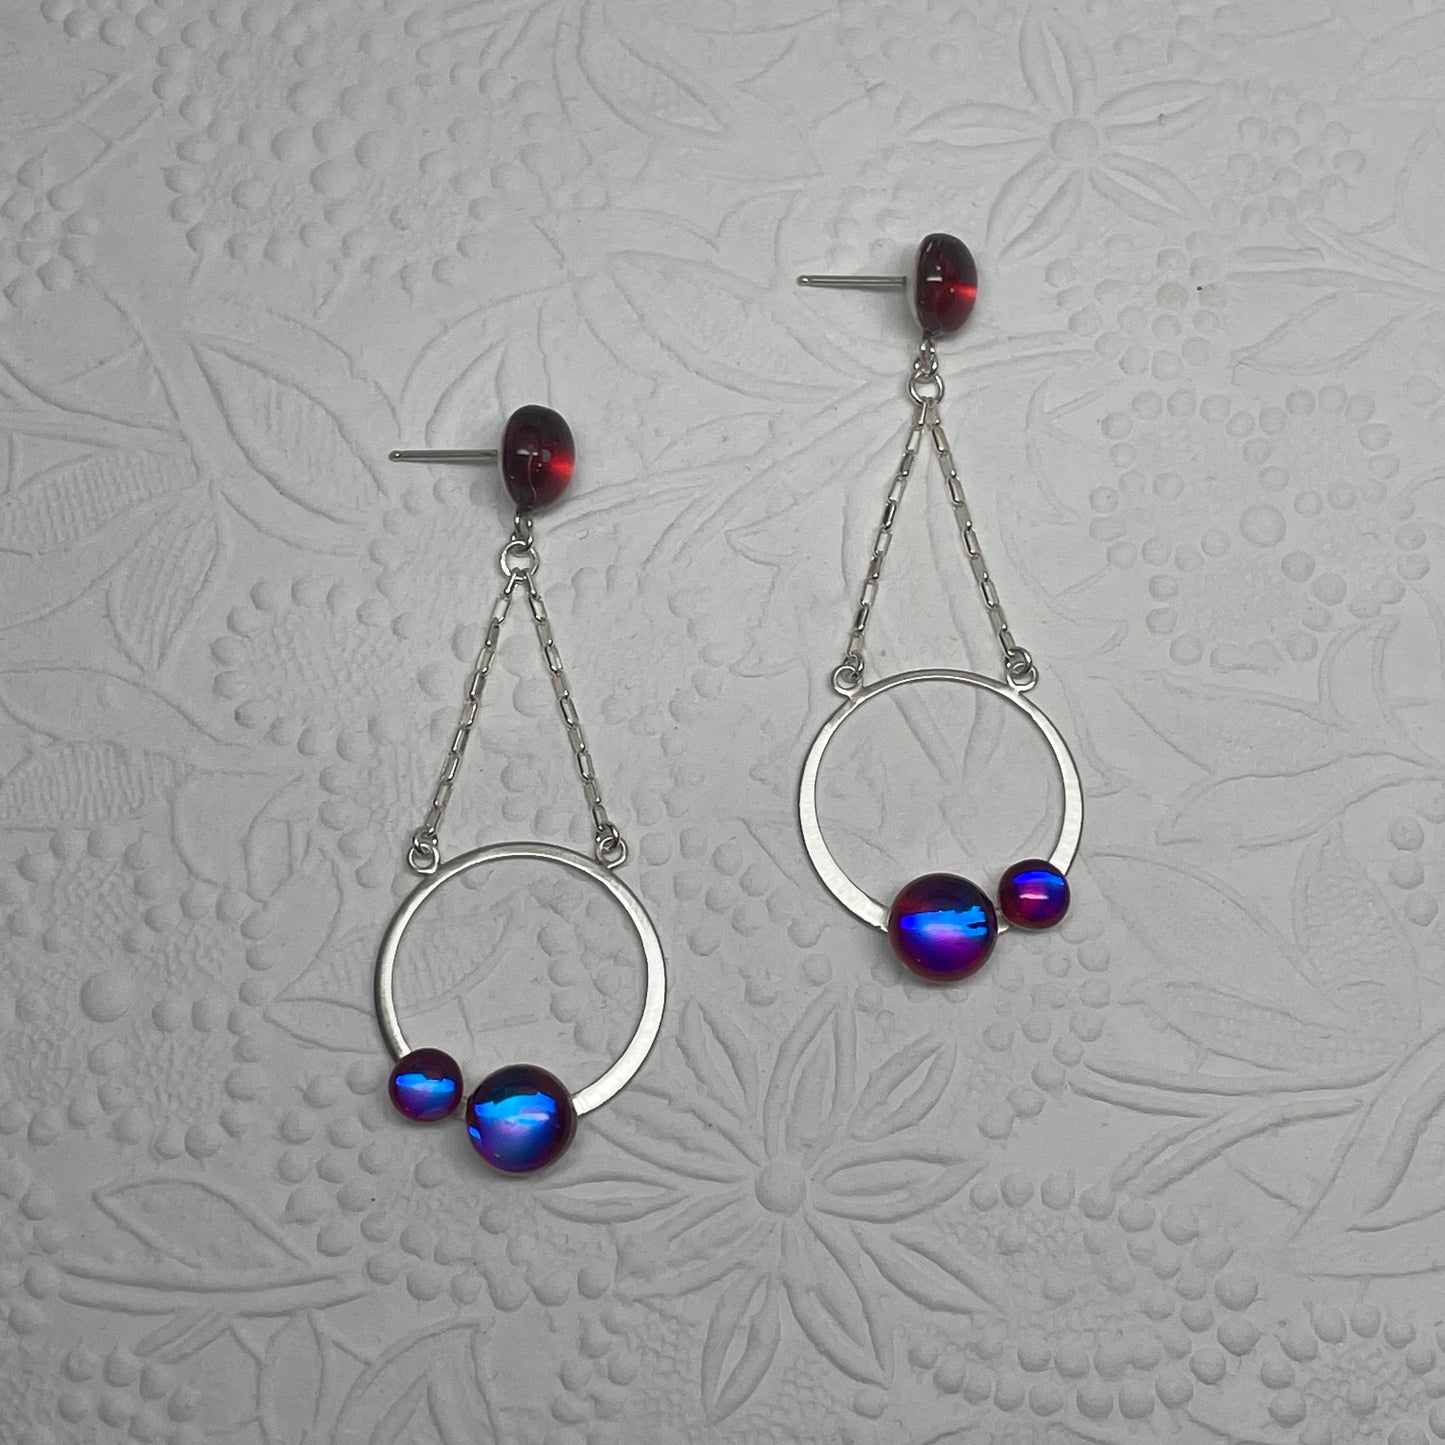 Double Orbit Earrings - Juicy Berry